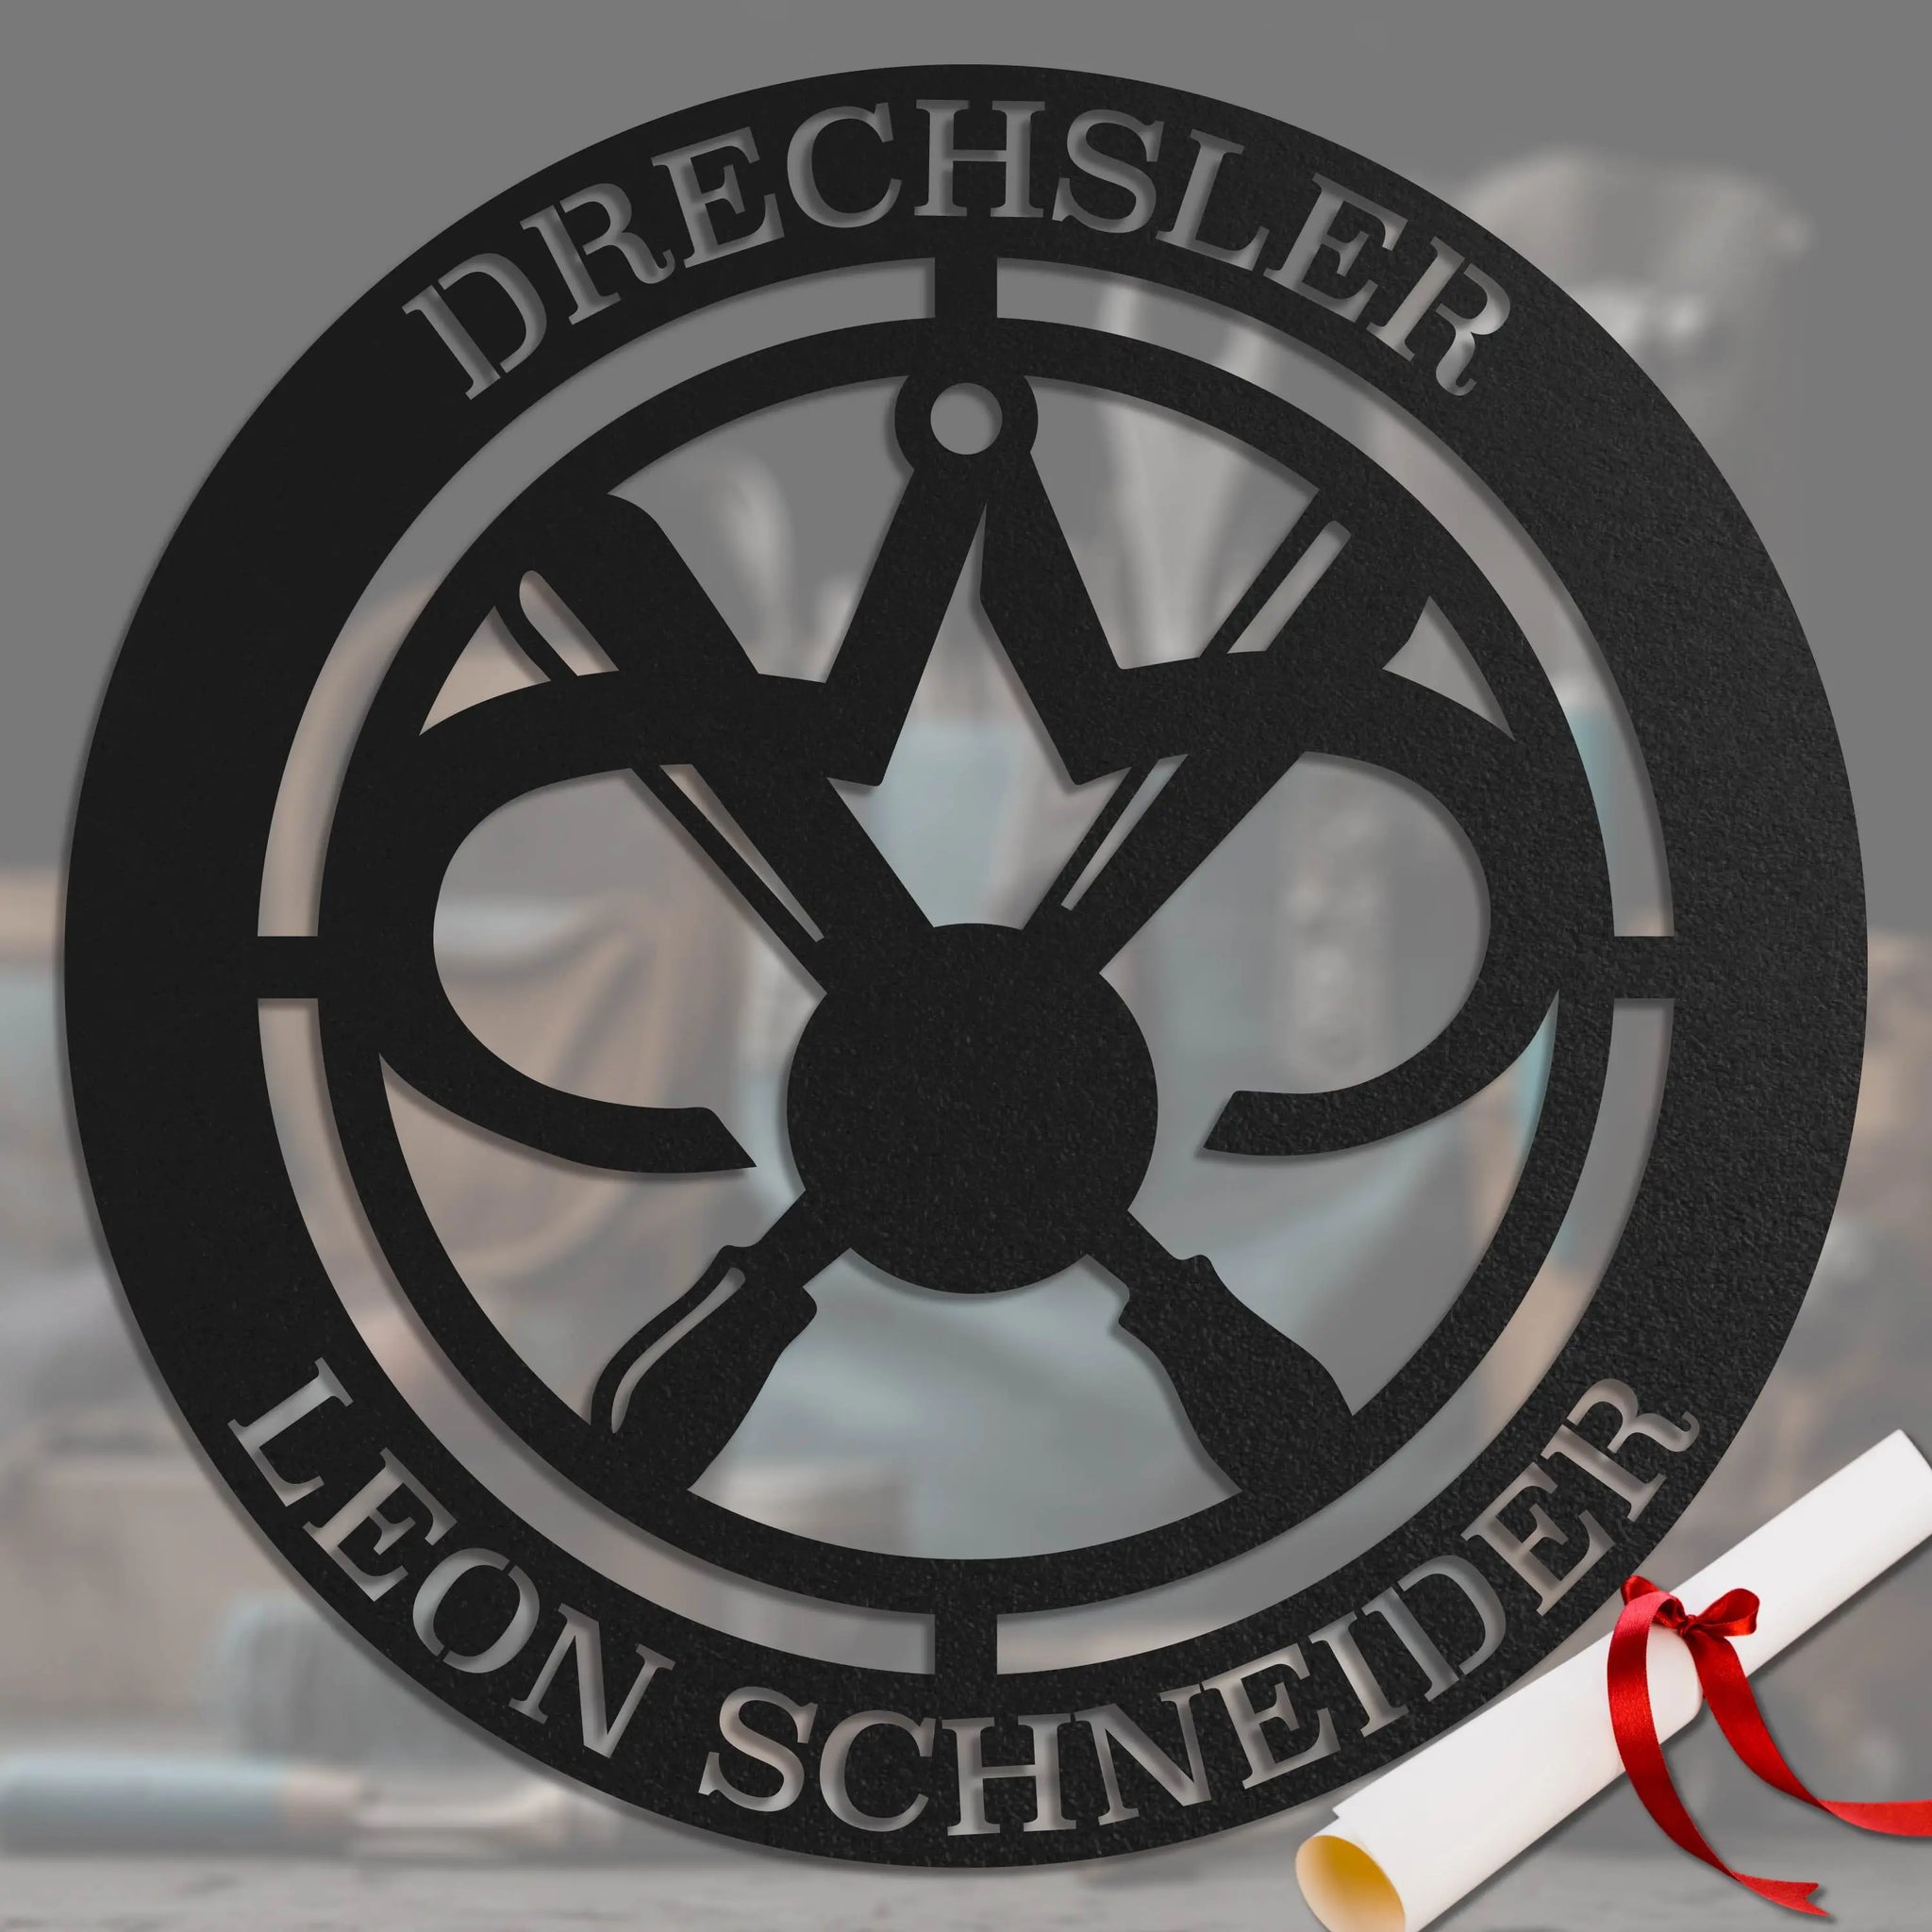 Drechsler